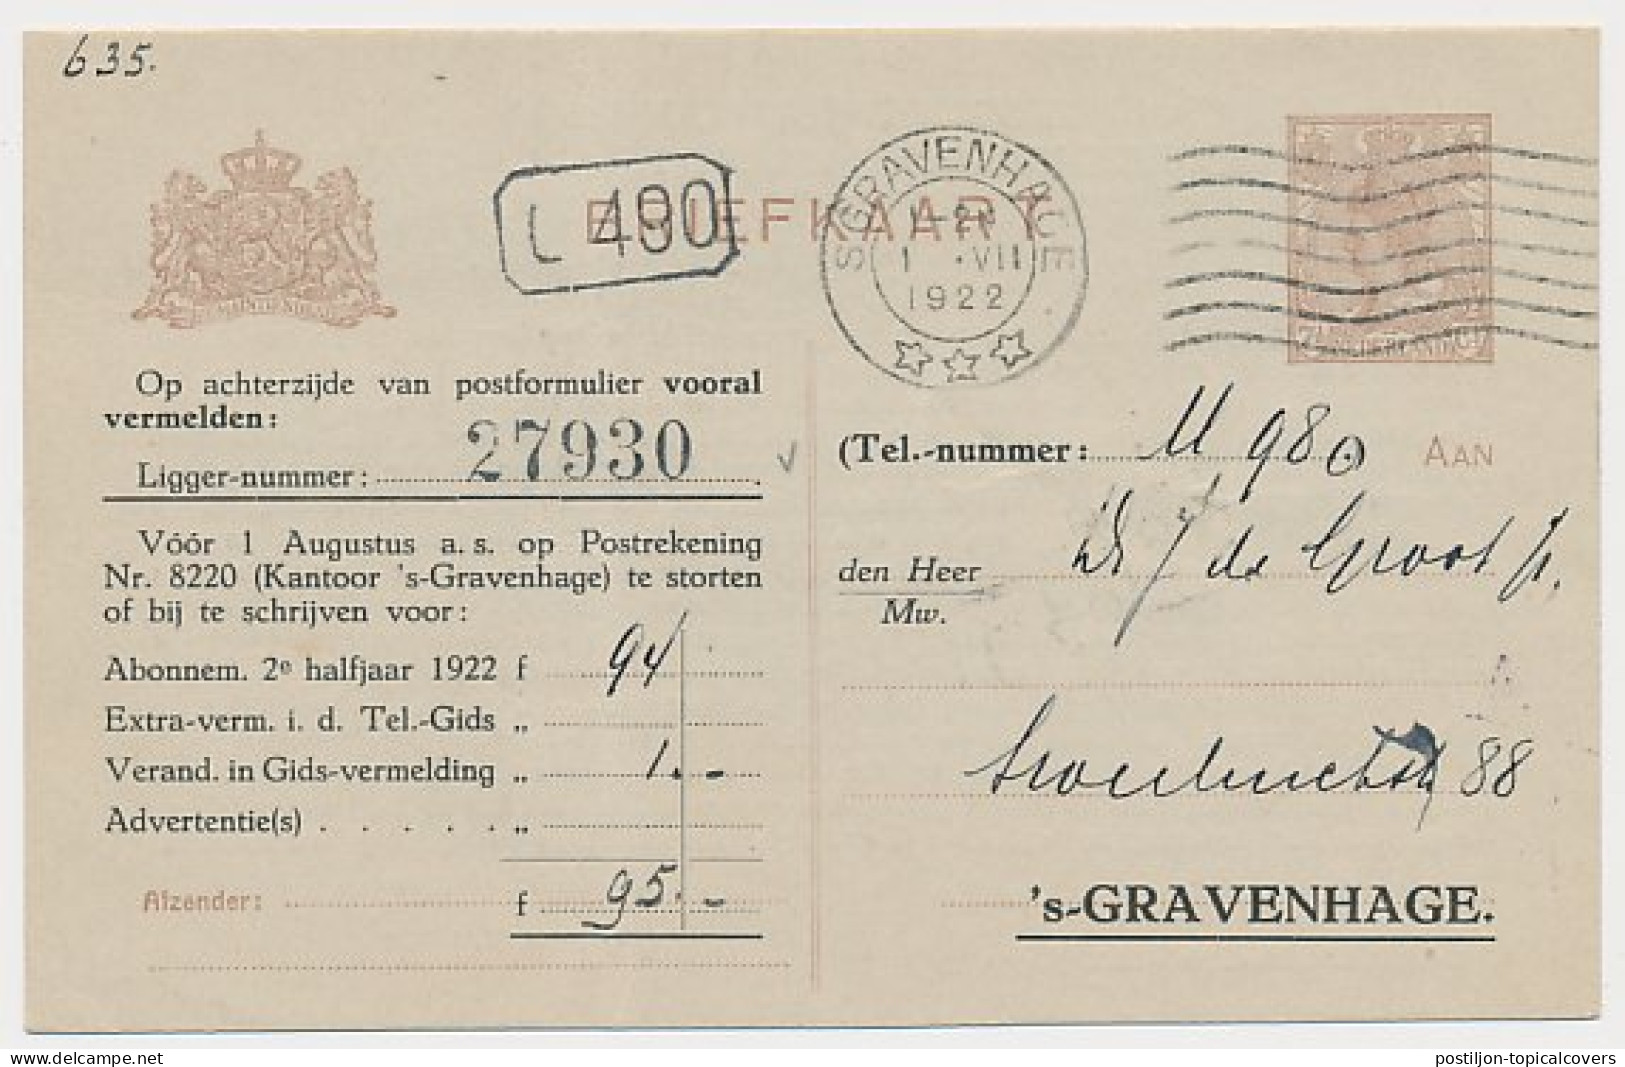 Briefkaart G. (TEL) 191 Cat. Onbekend - Telephoondienst 1922  - Postal Stationery